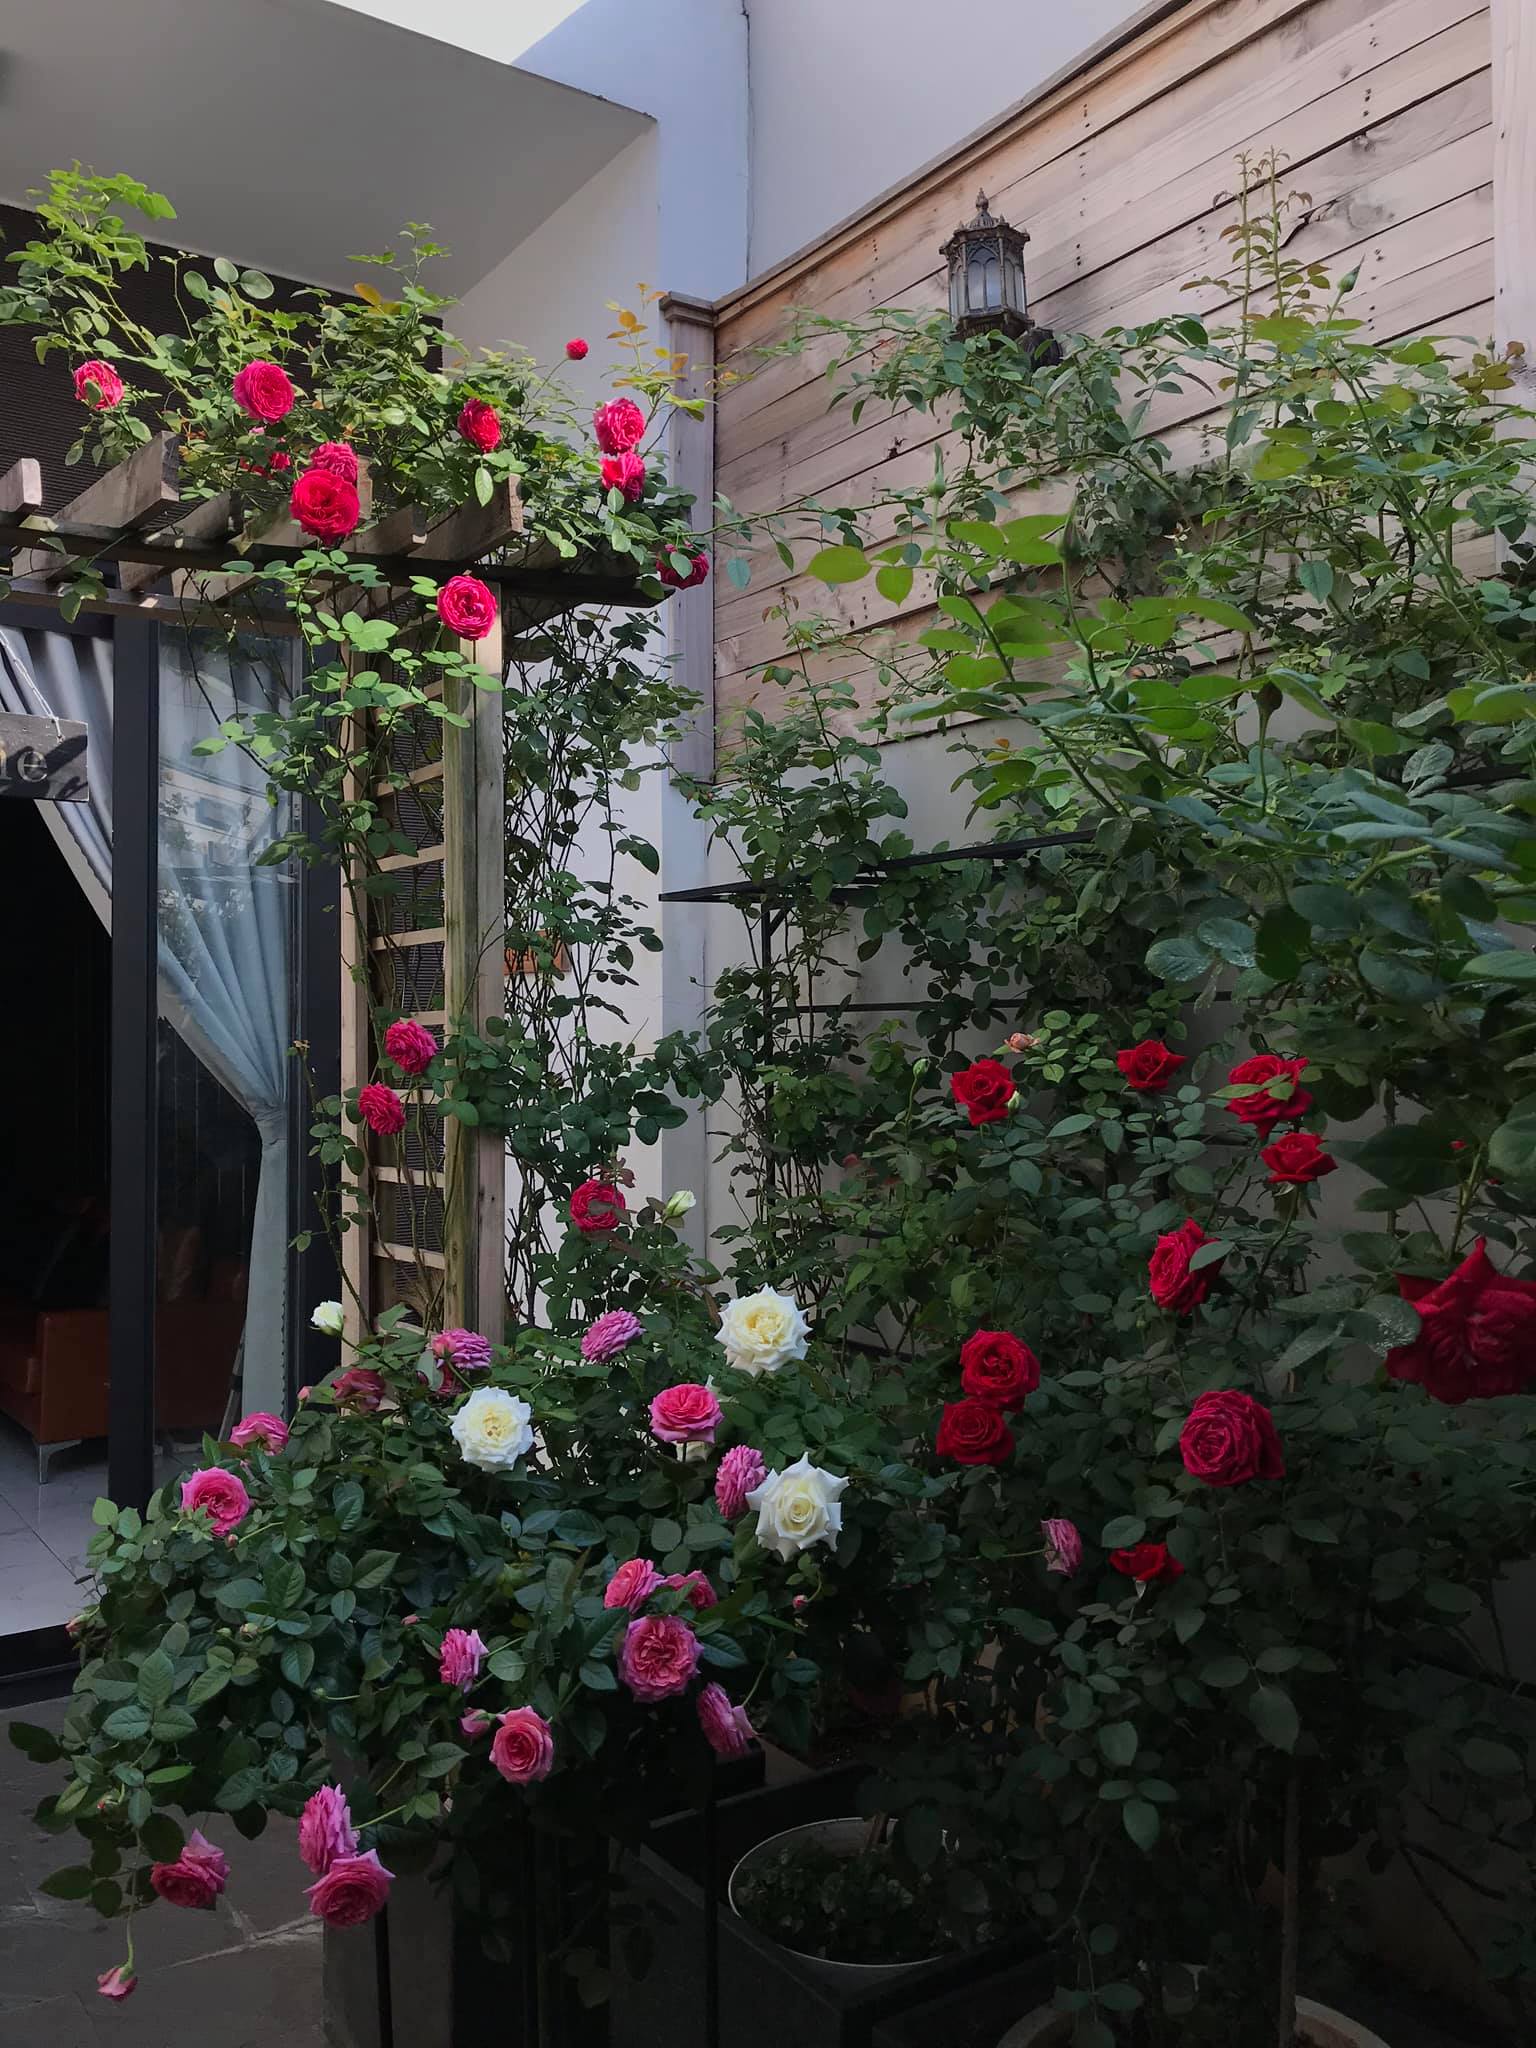 Ngôi nhà hoa hồng luôn khiến chúng ta cảm thấy ấm áp và thăng hoa vì sự tươi tắn và rực rỡ của những bông hồng. Hãy cùng xem hình ảnh ngôi nhà hoa hồng này để trải nghiệm cảm giác ngọt ngào và thăng hoa đó nhé.